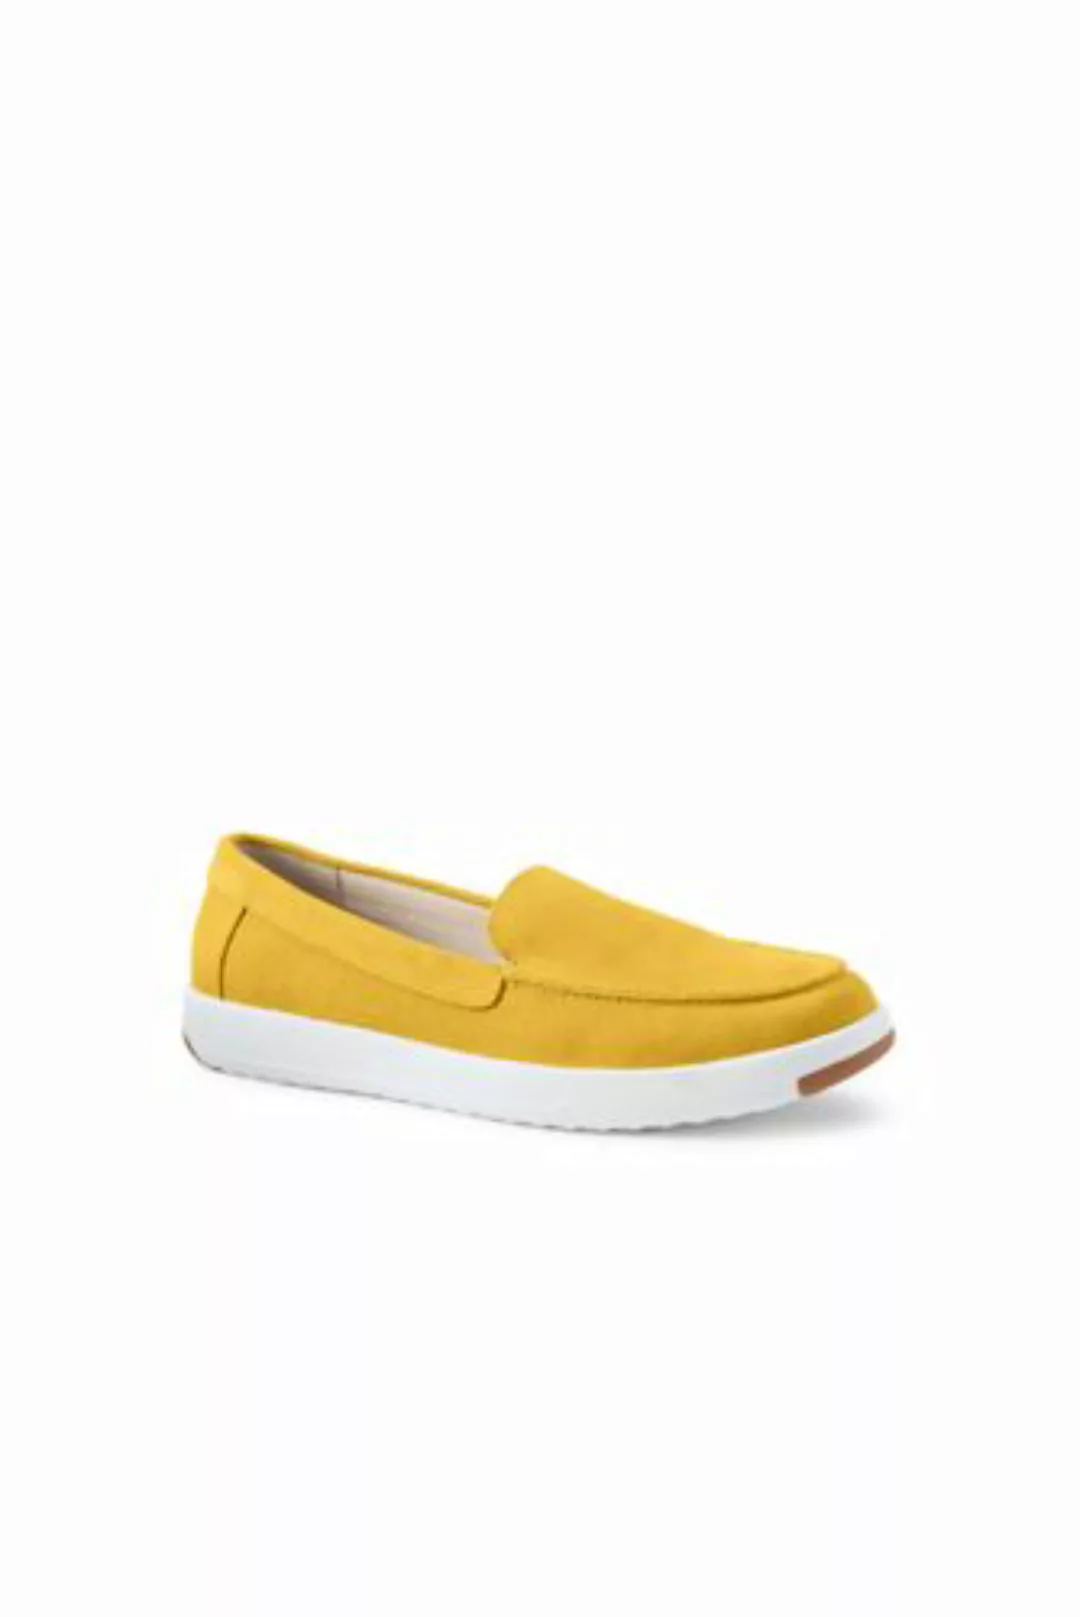 Federleichte Komfort-Loafer, Damen, Größe: 36 Weit, Gelb, Rauleder, by Land günstig online kaufen